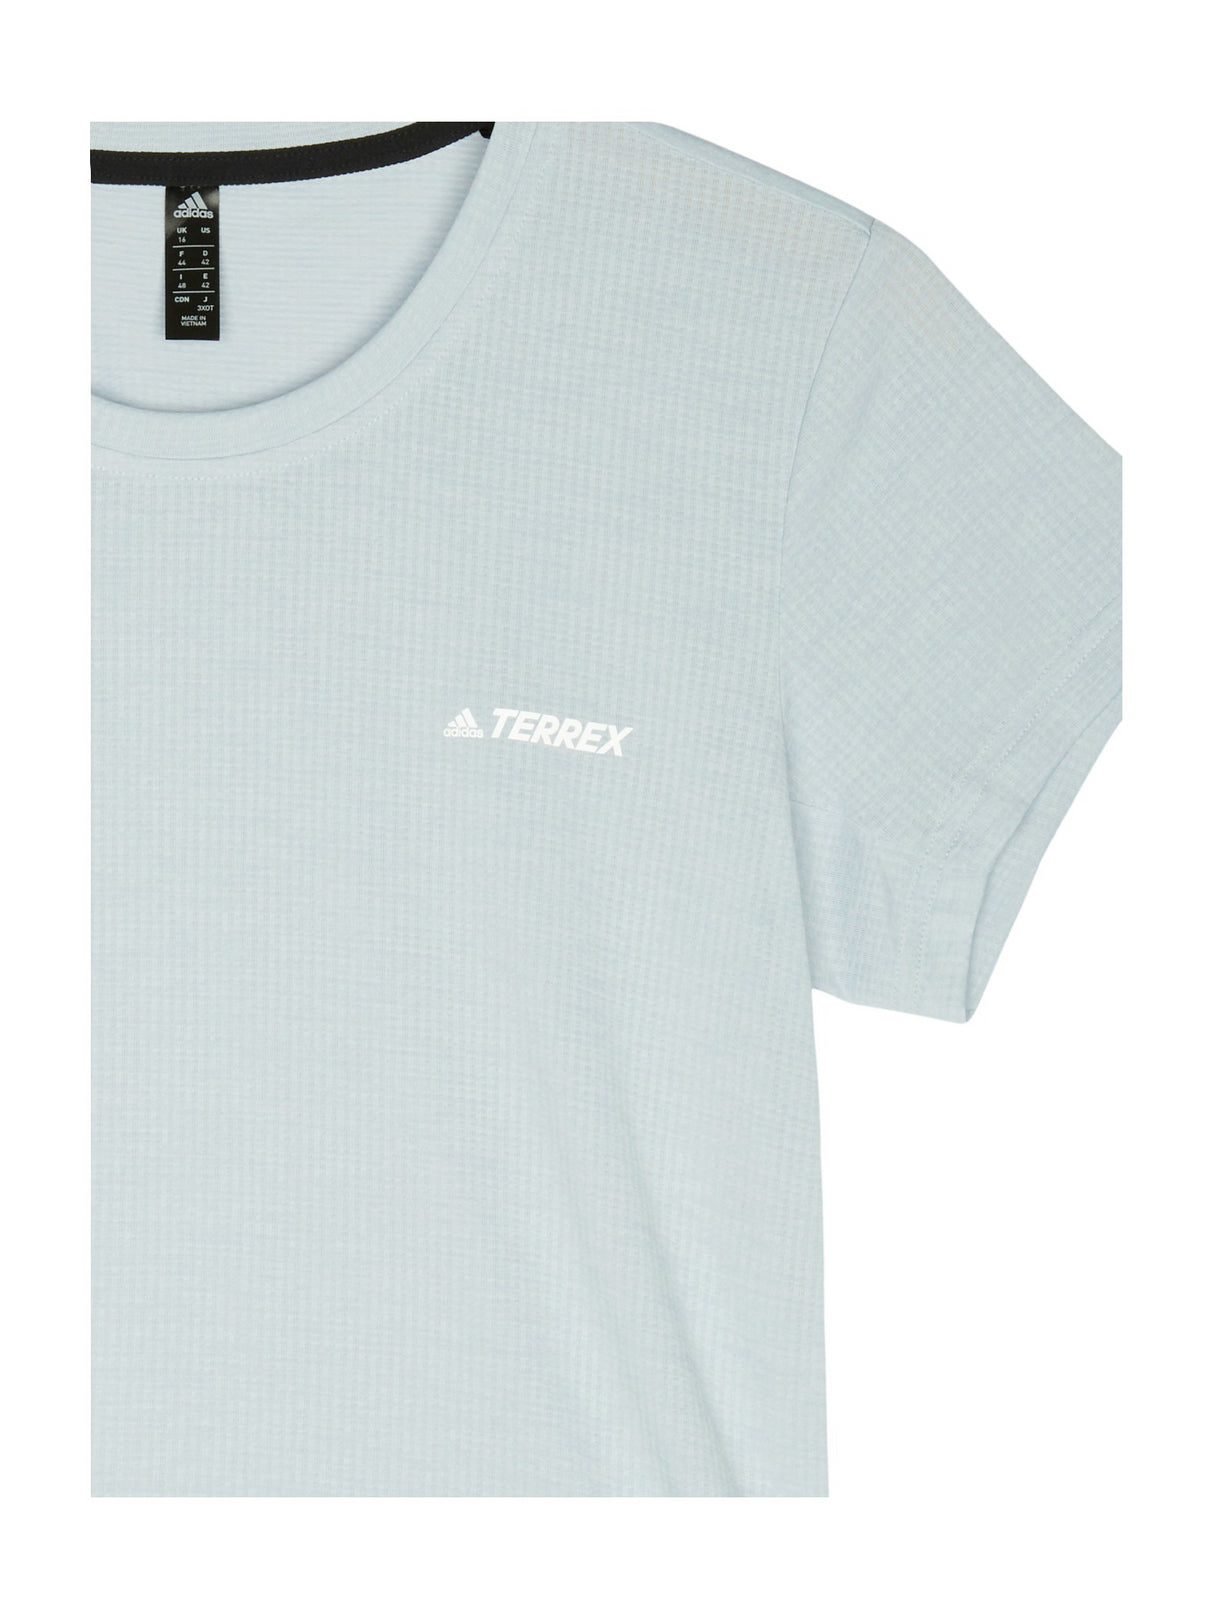 Adidas Terrex T-Shirt Funktion für Damen